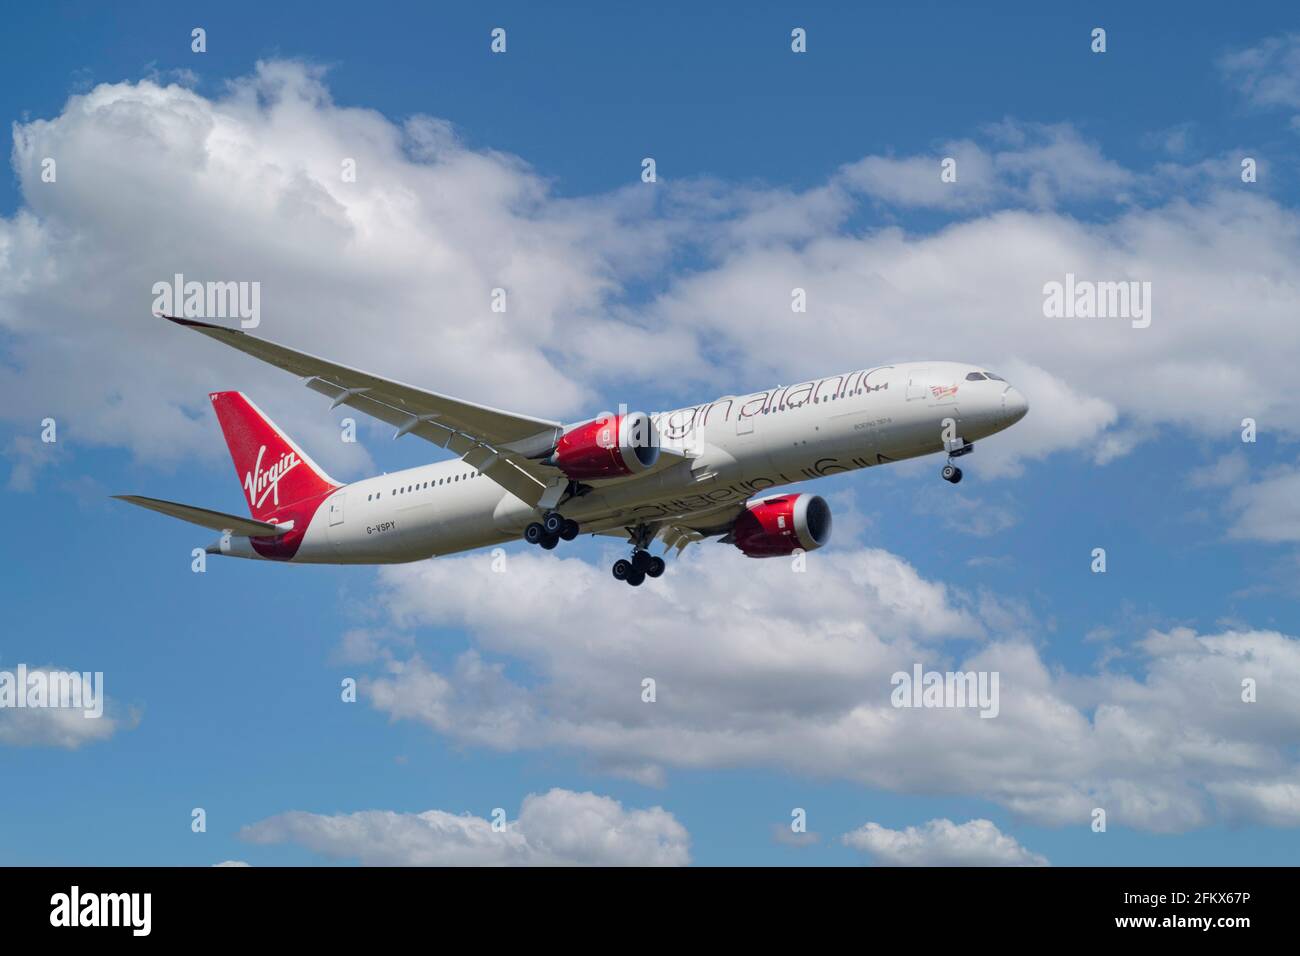 Virgin Atlantic 787-9 Dreamliner atterrissage à l'aéroport de Londres Heathrow, London Borough of Hillingdon, Greater London, Angleterre, Royaume-Uni Banque D'Images